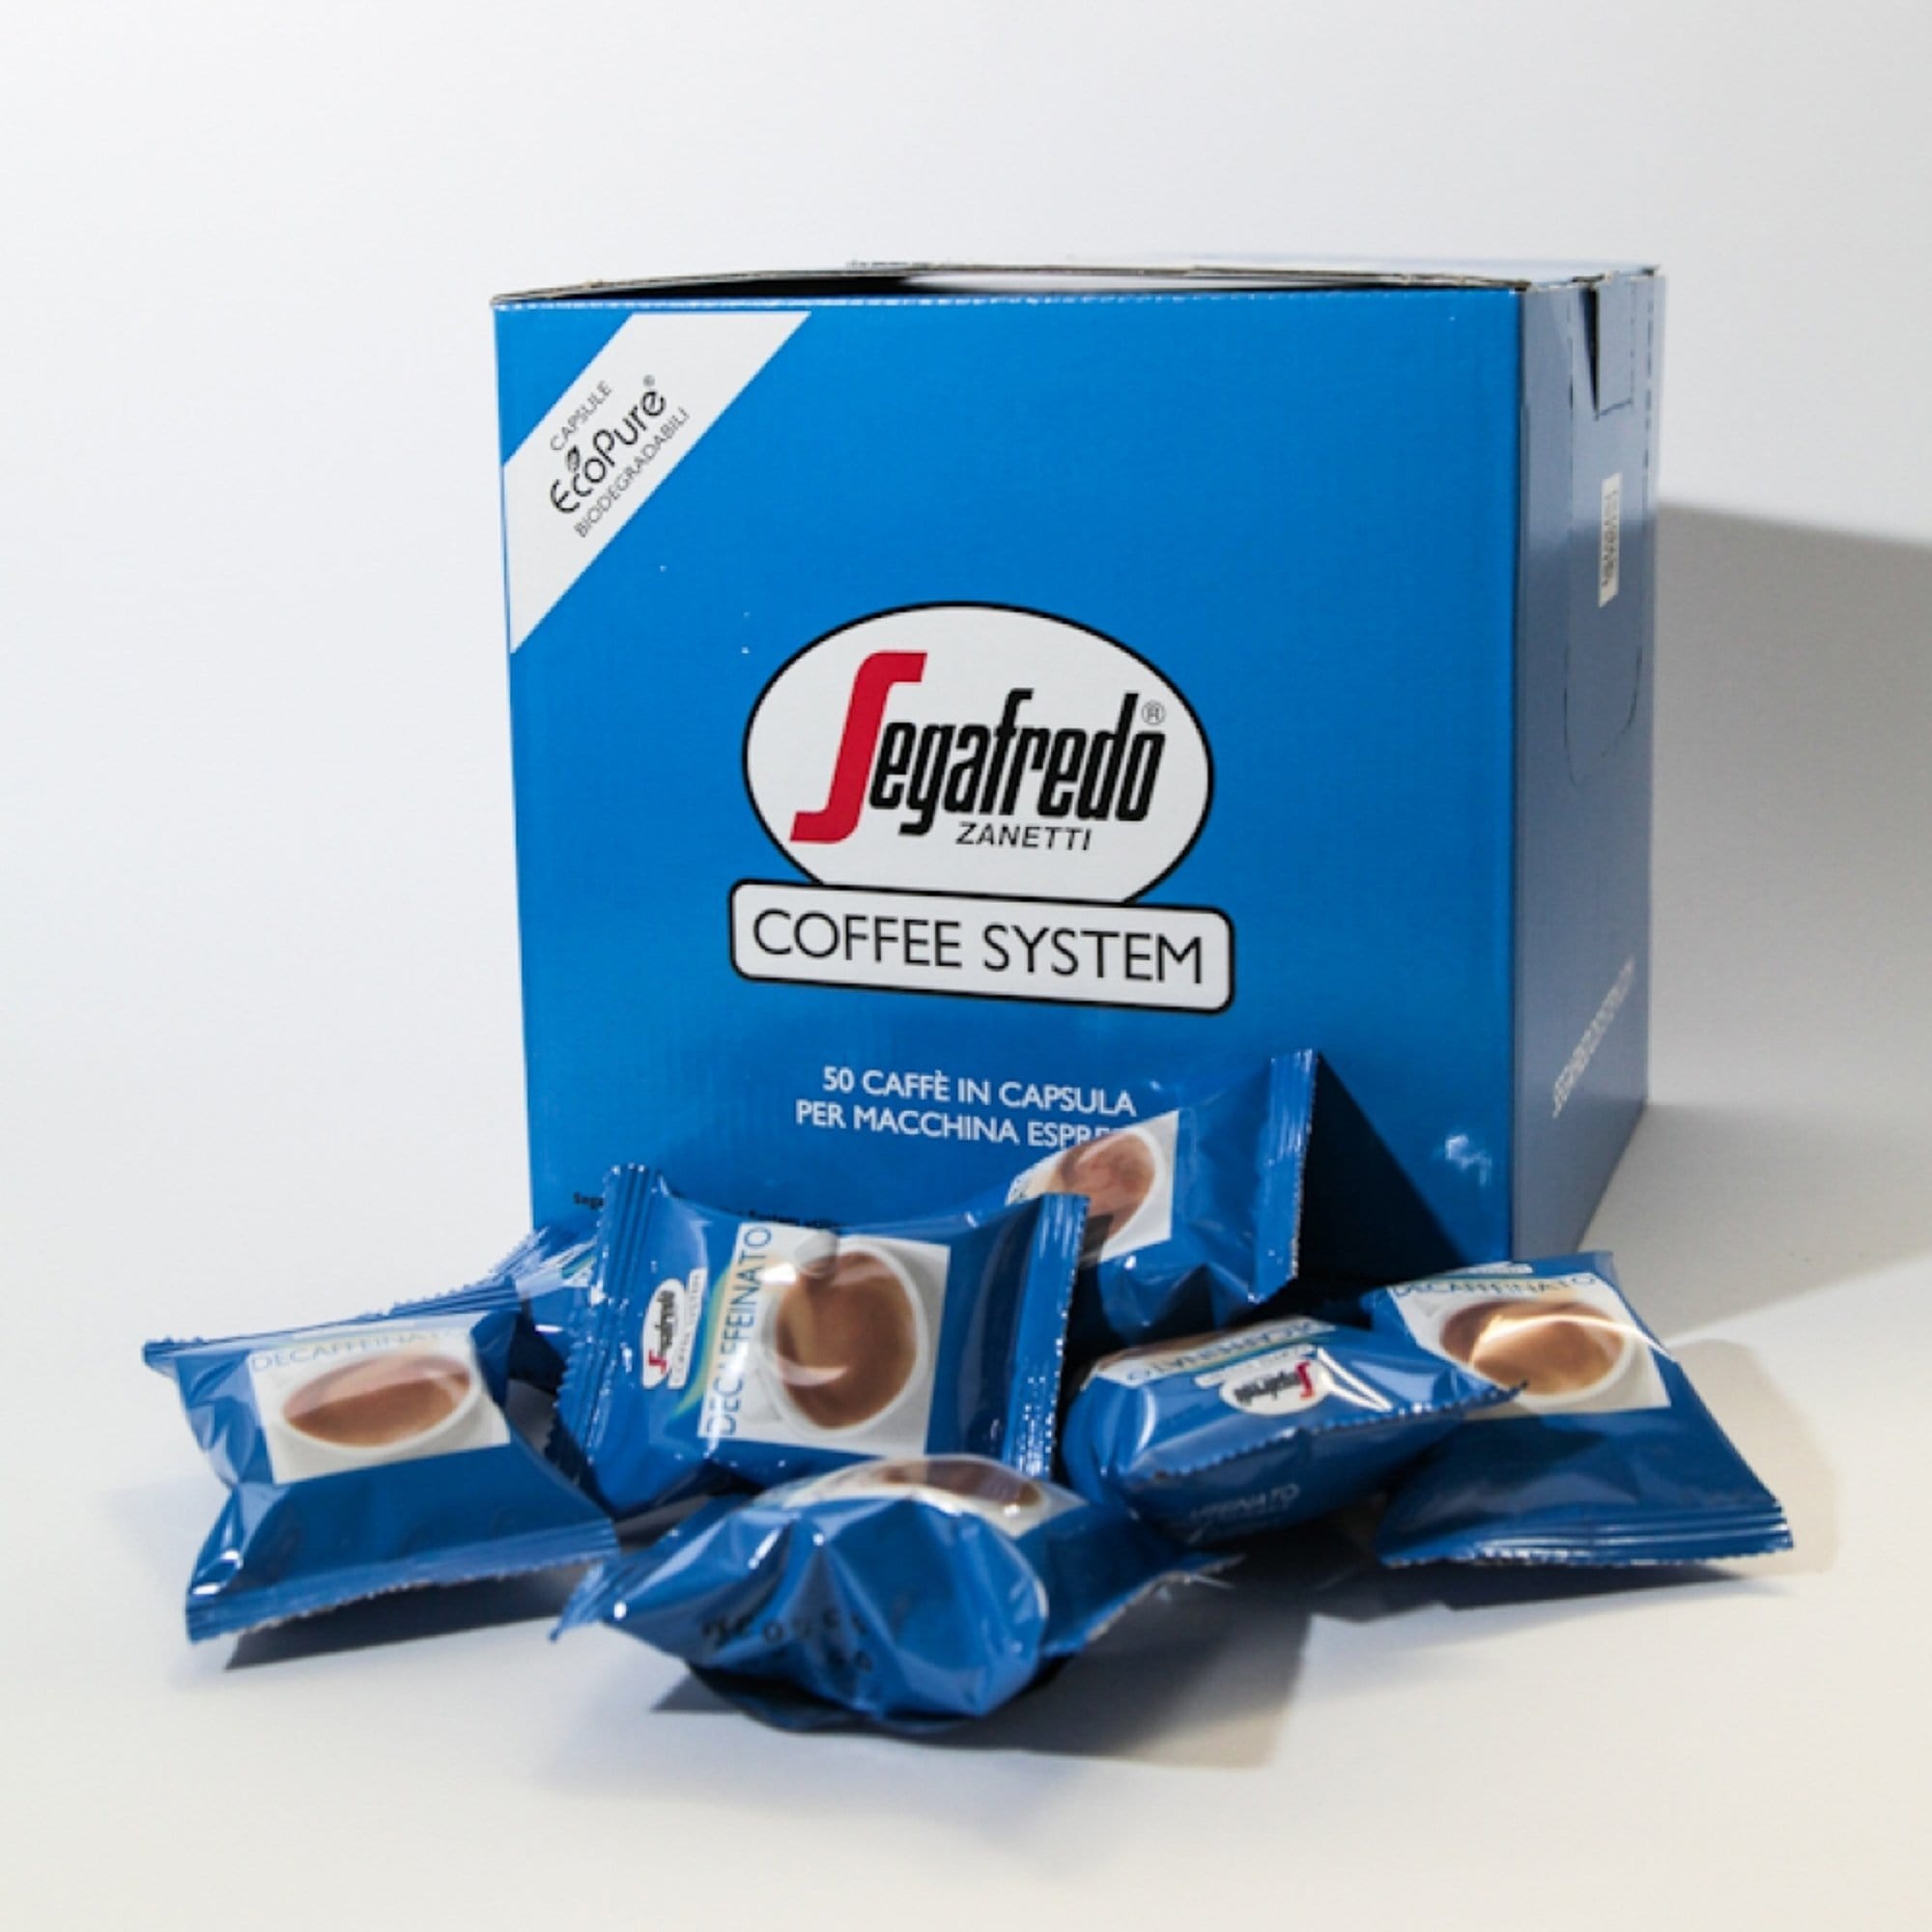 Segafredo Kapsulės Kavos kapsulės Segafredo be kofeino - Decaf, 10 x 6 g